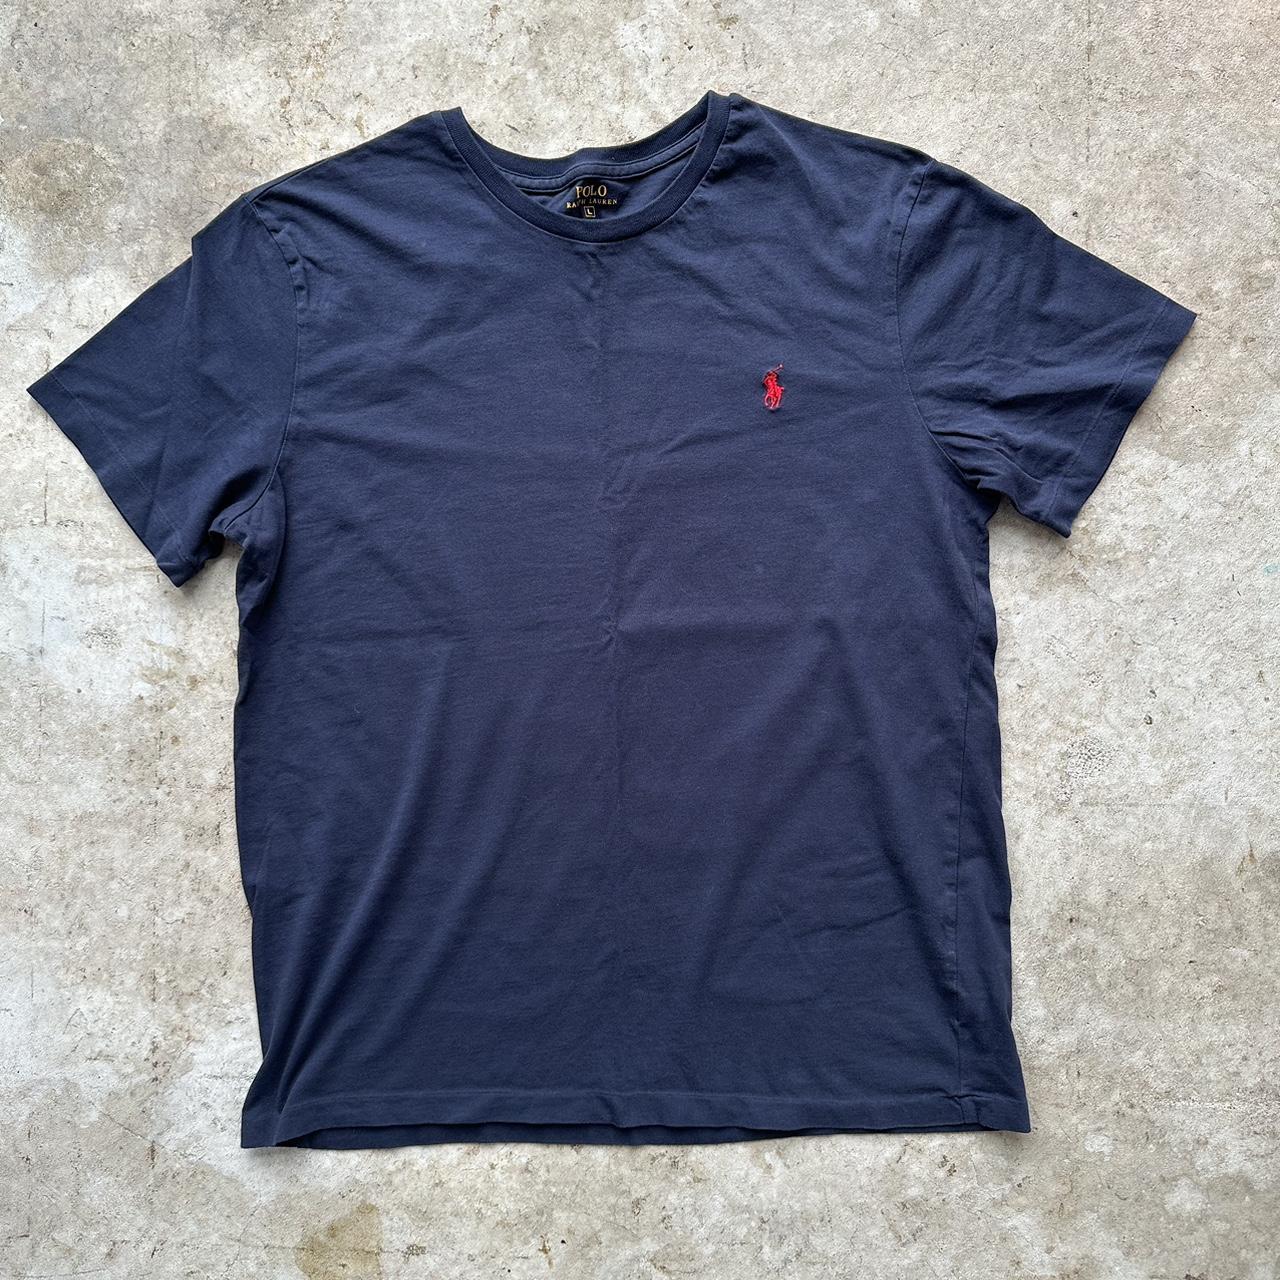 Polo Ralph Lauren short sleeve shirt Men’s size... - Depop